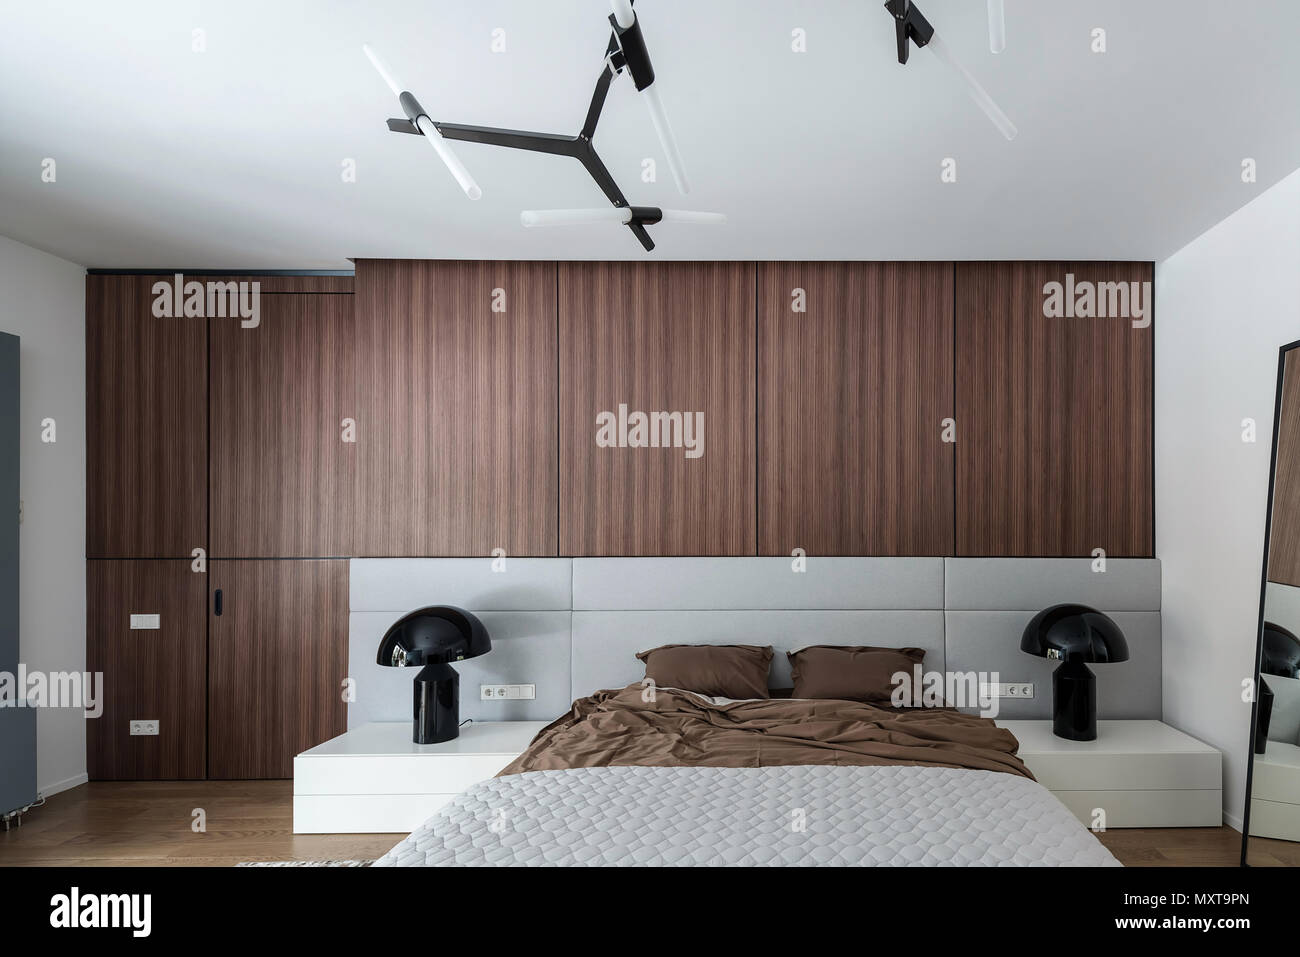 Modernes Schlafzimmer mit weißen Wänden und einem Parkett auf dem Fußboden. Es gibt ein Bett mit brauner Bettwäsche und einem Grau karierte, Spiegel, schwarzem Lampen auf steht, Stockfoto